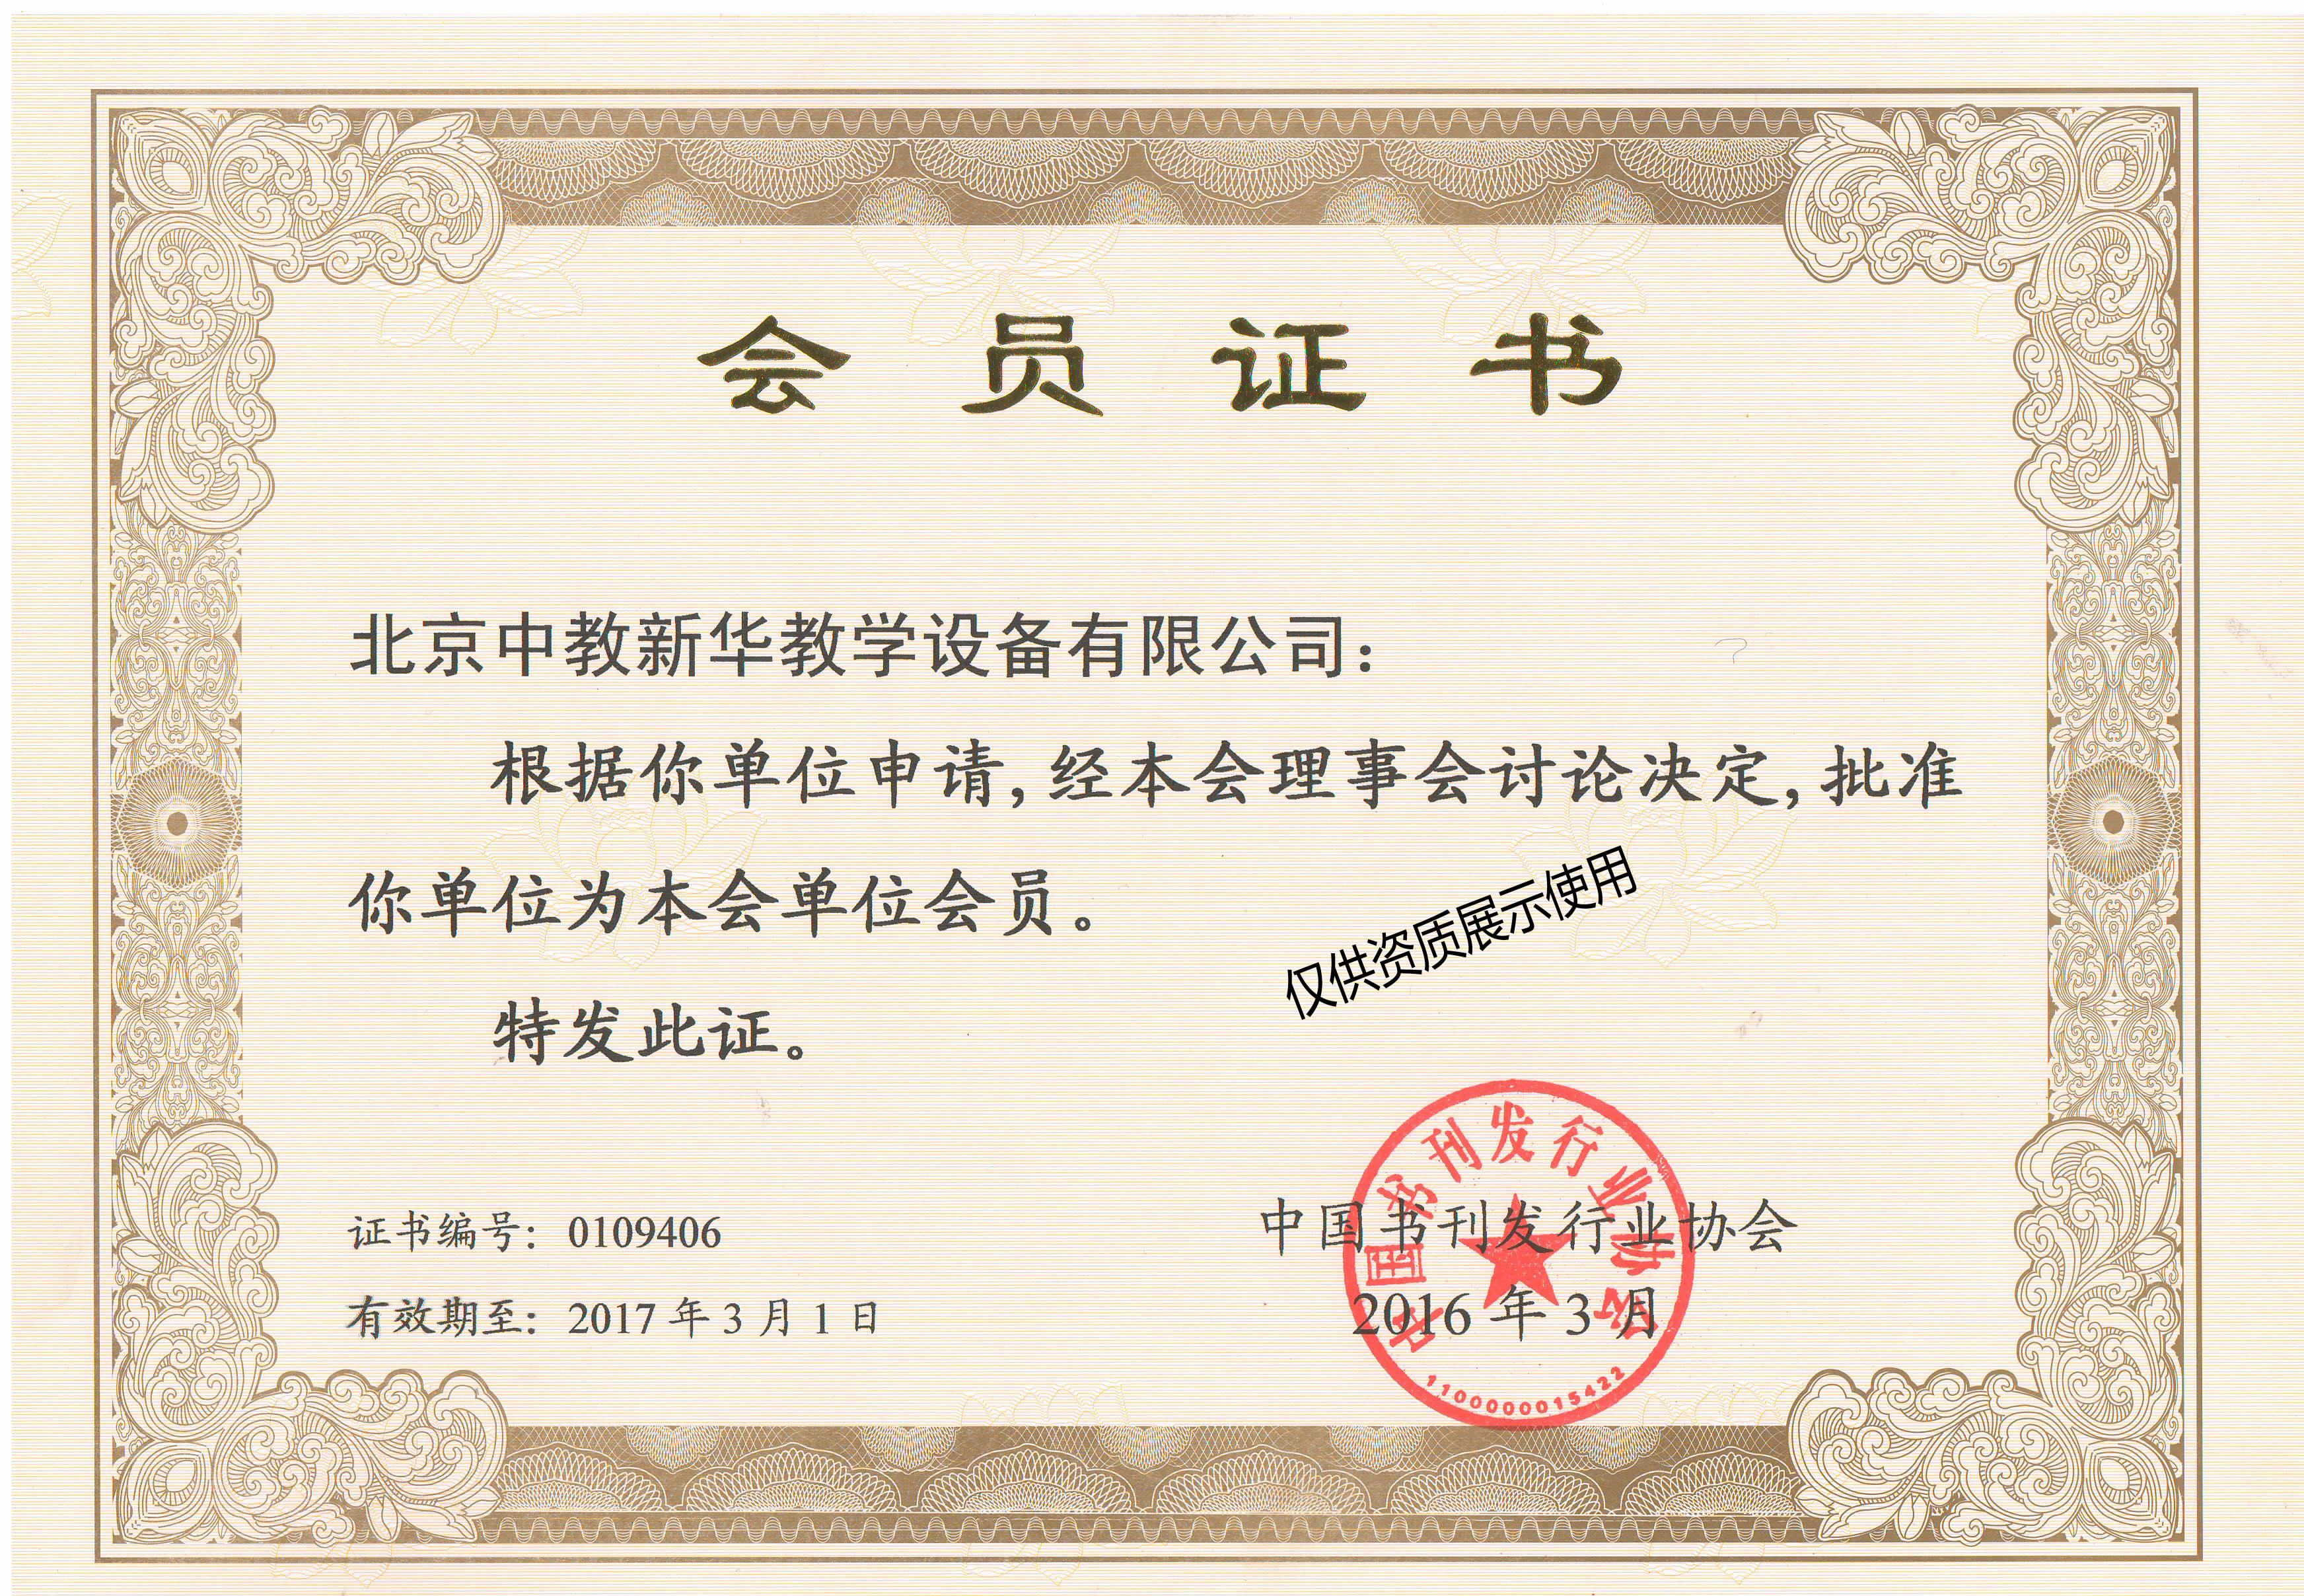 中国书刊发行行业协会会员证书